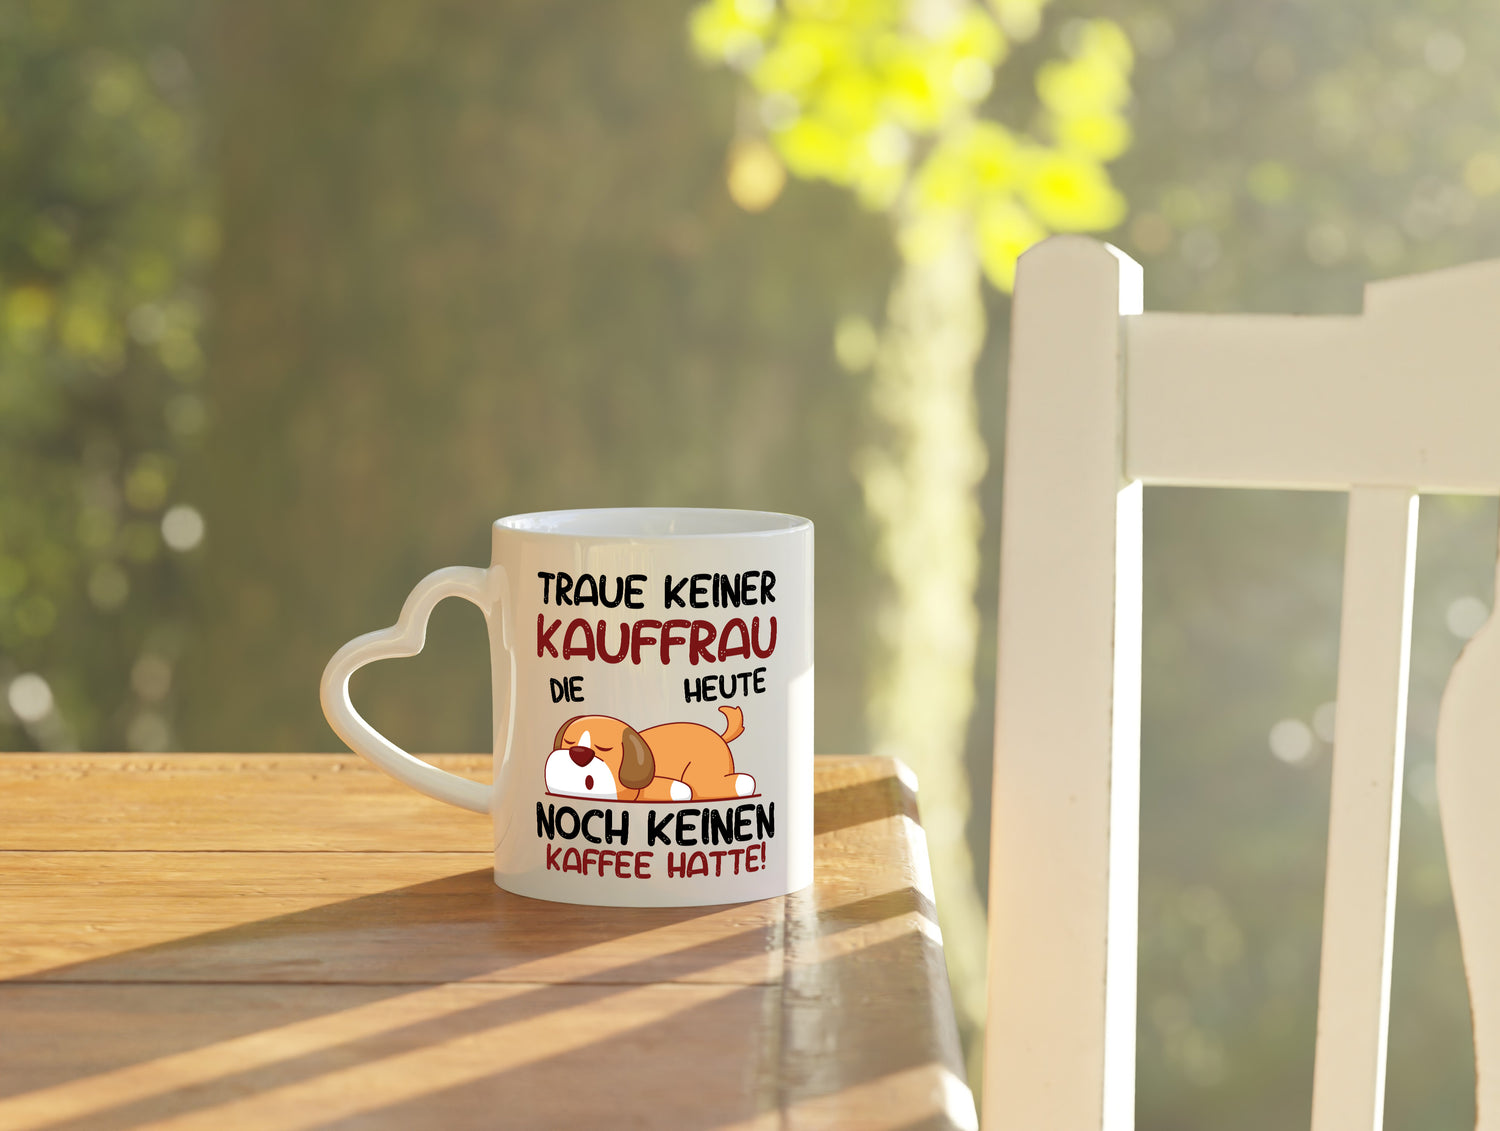 Traue keiner Kauffrau | Kauffrauen - Herzhenkel Tasse - Kaffeetasse / Geschenk / Familie